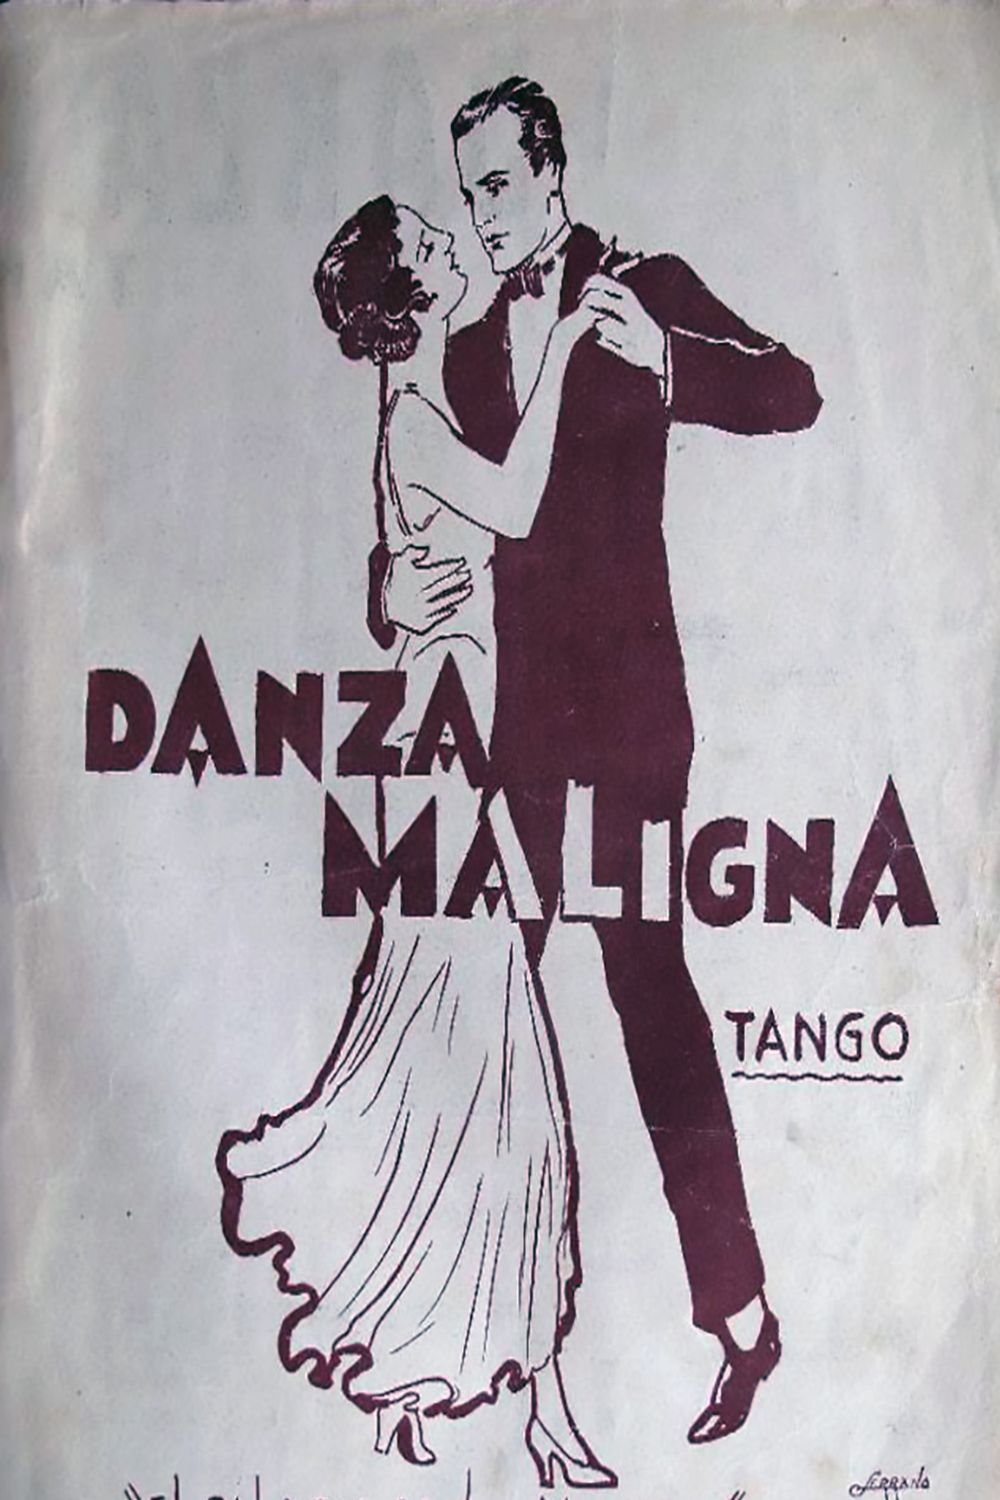 "Danza maligna", Argentine Tango music sheet cover.